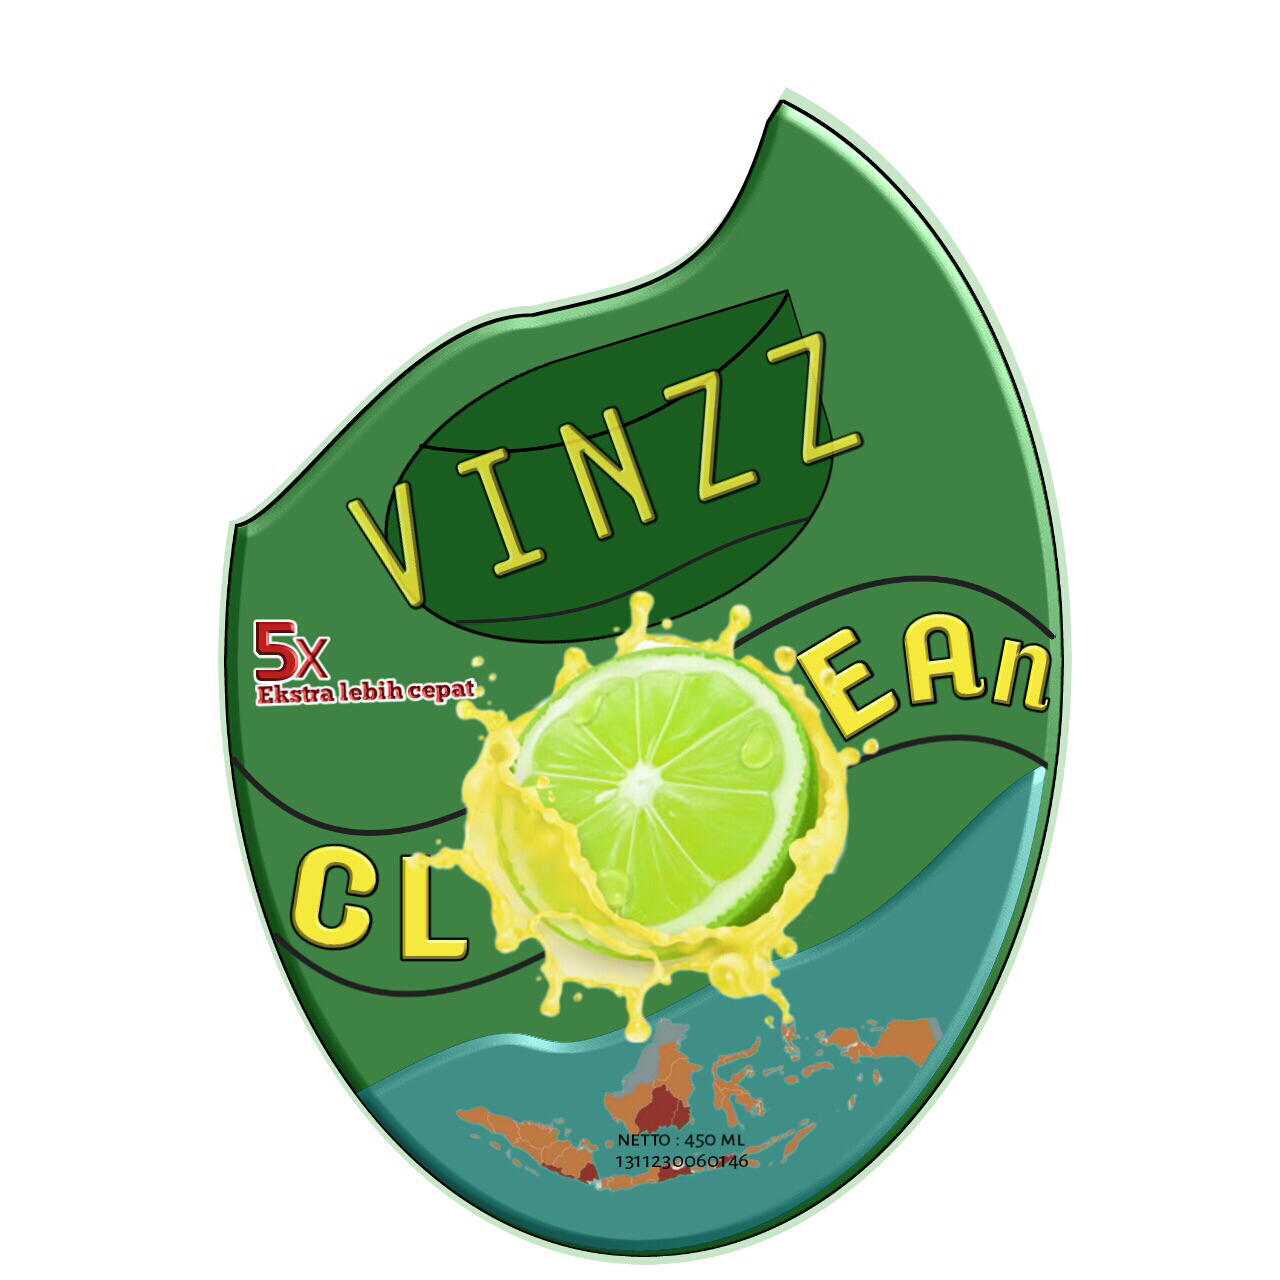 Vinzz clean